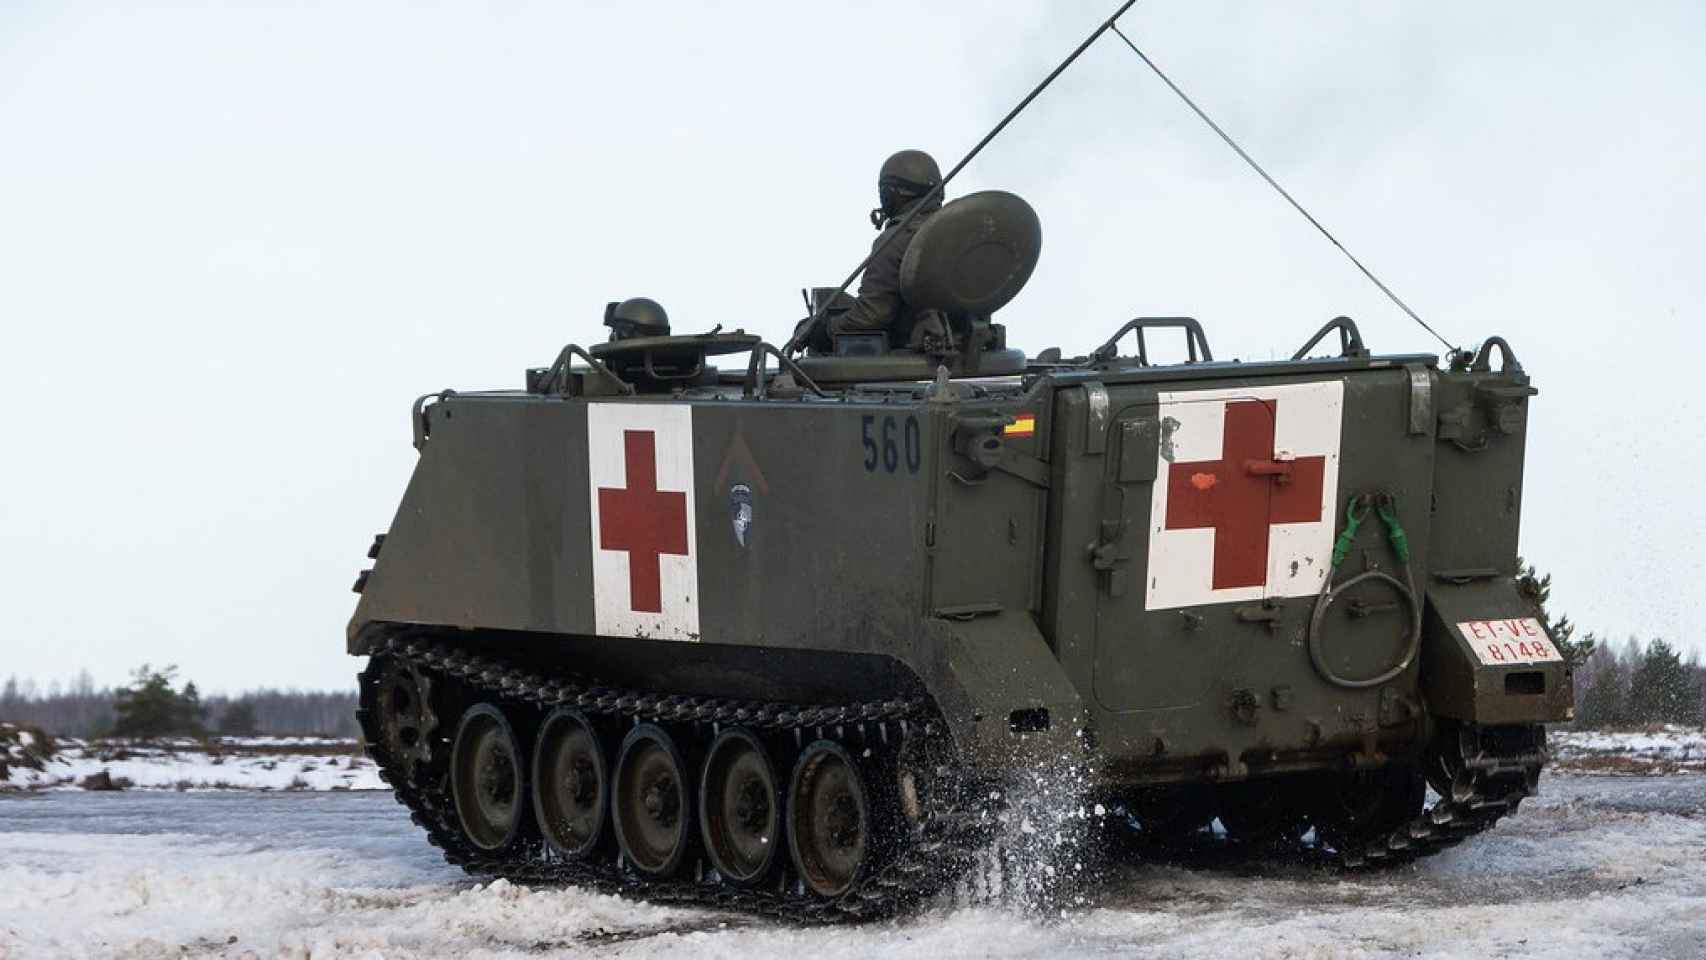 Versión ambulancia del M113